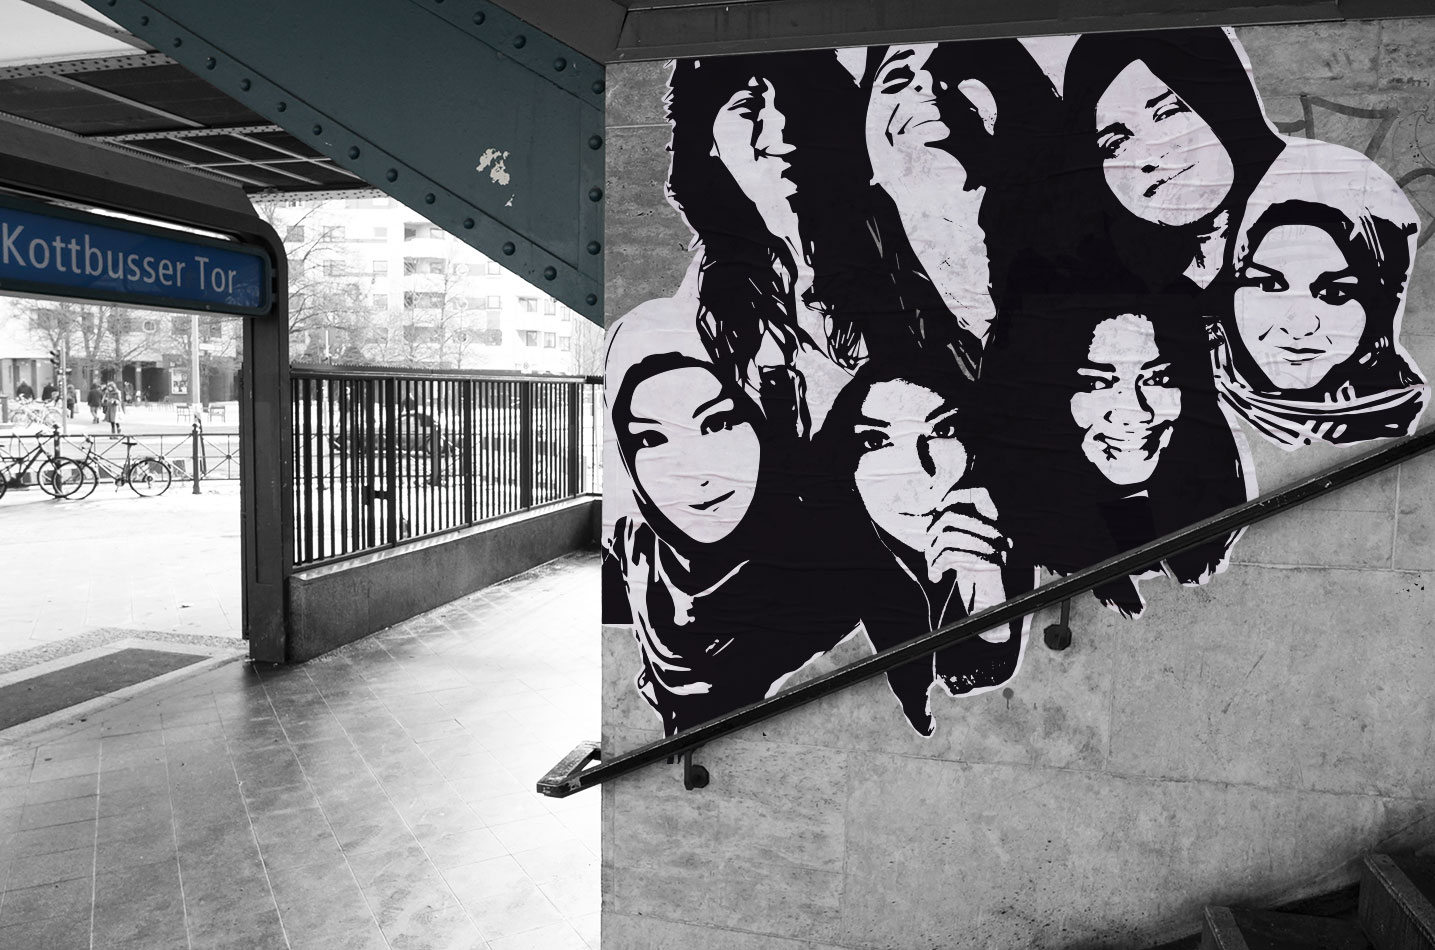 Foto/Illustration U-Bahnhof Kottbusser Tor mit den 7 Mädchen als Paste-Up